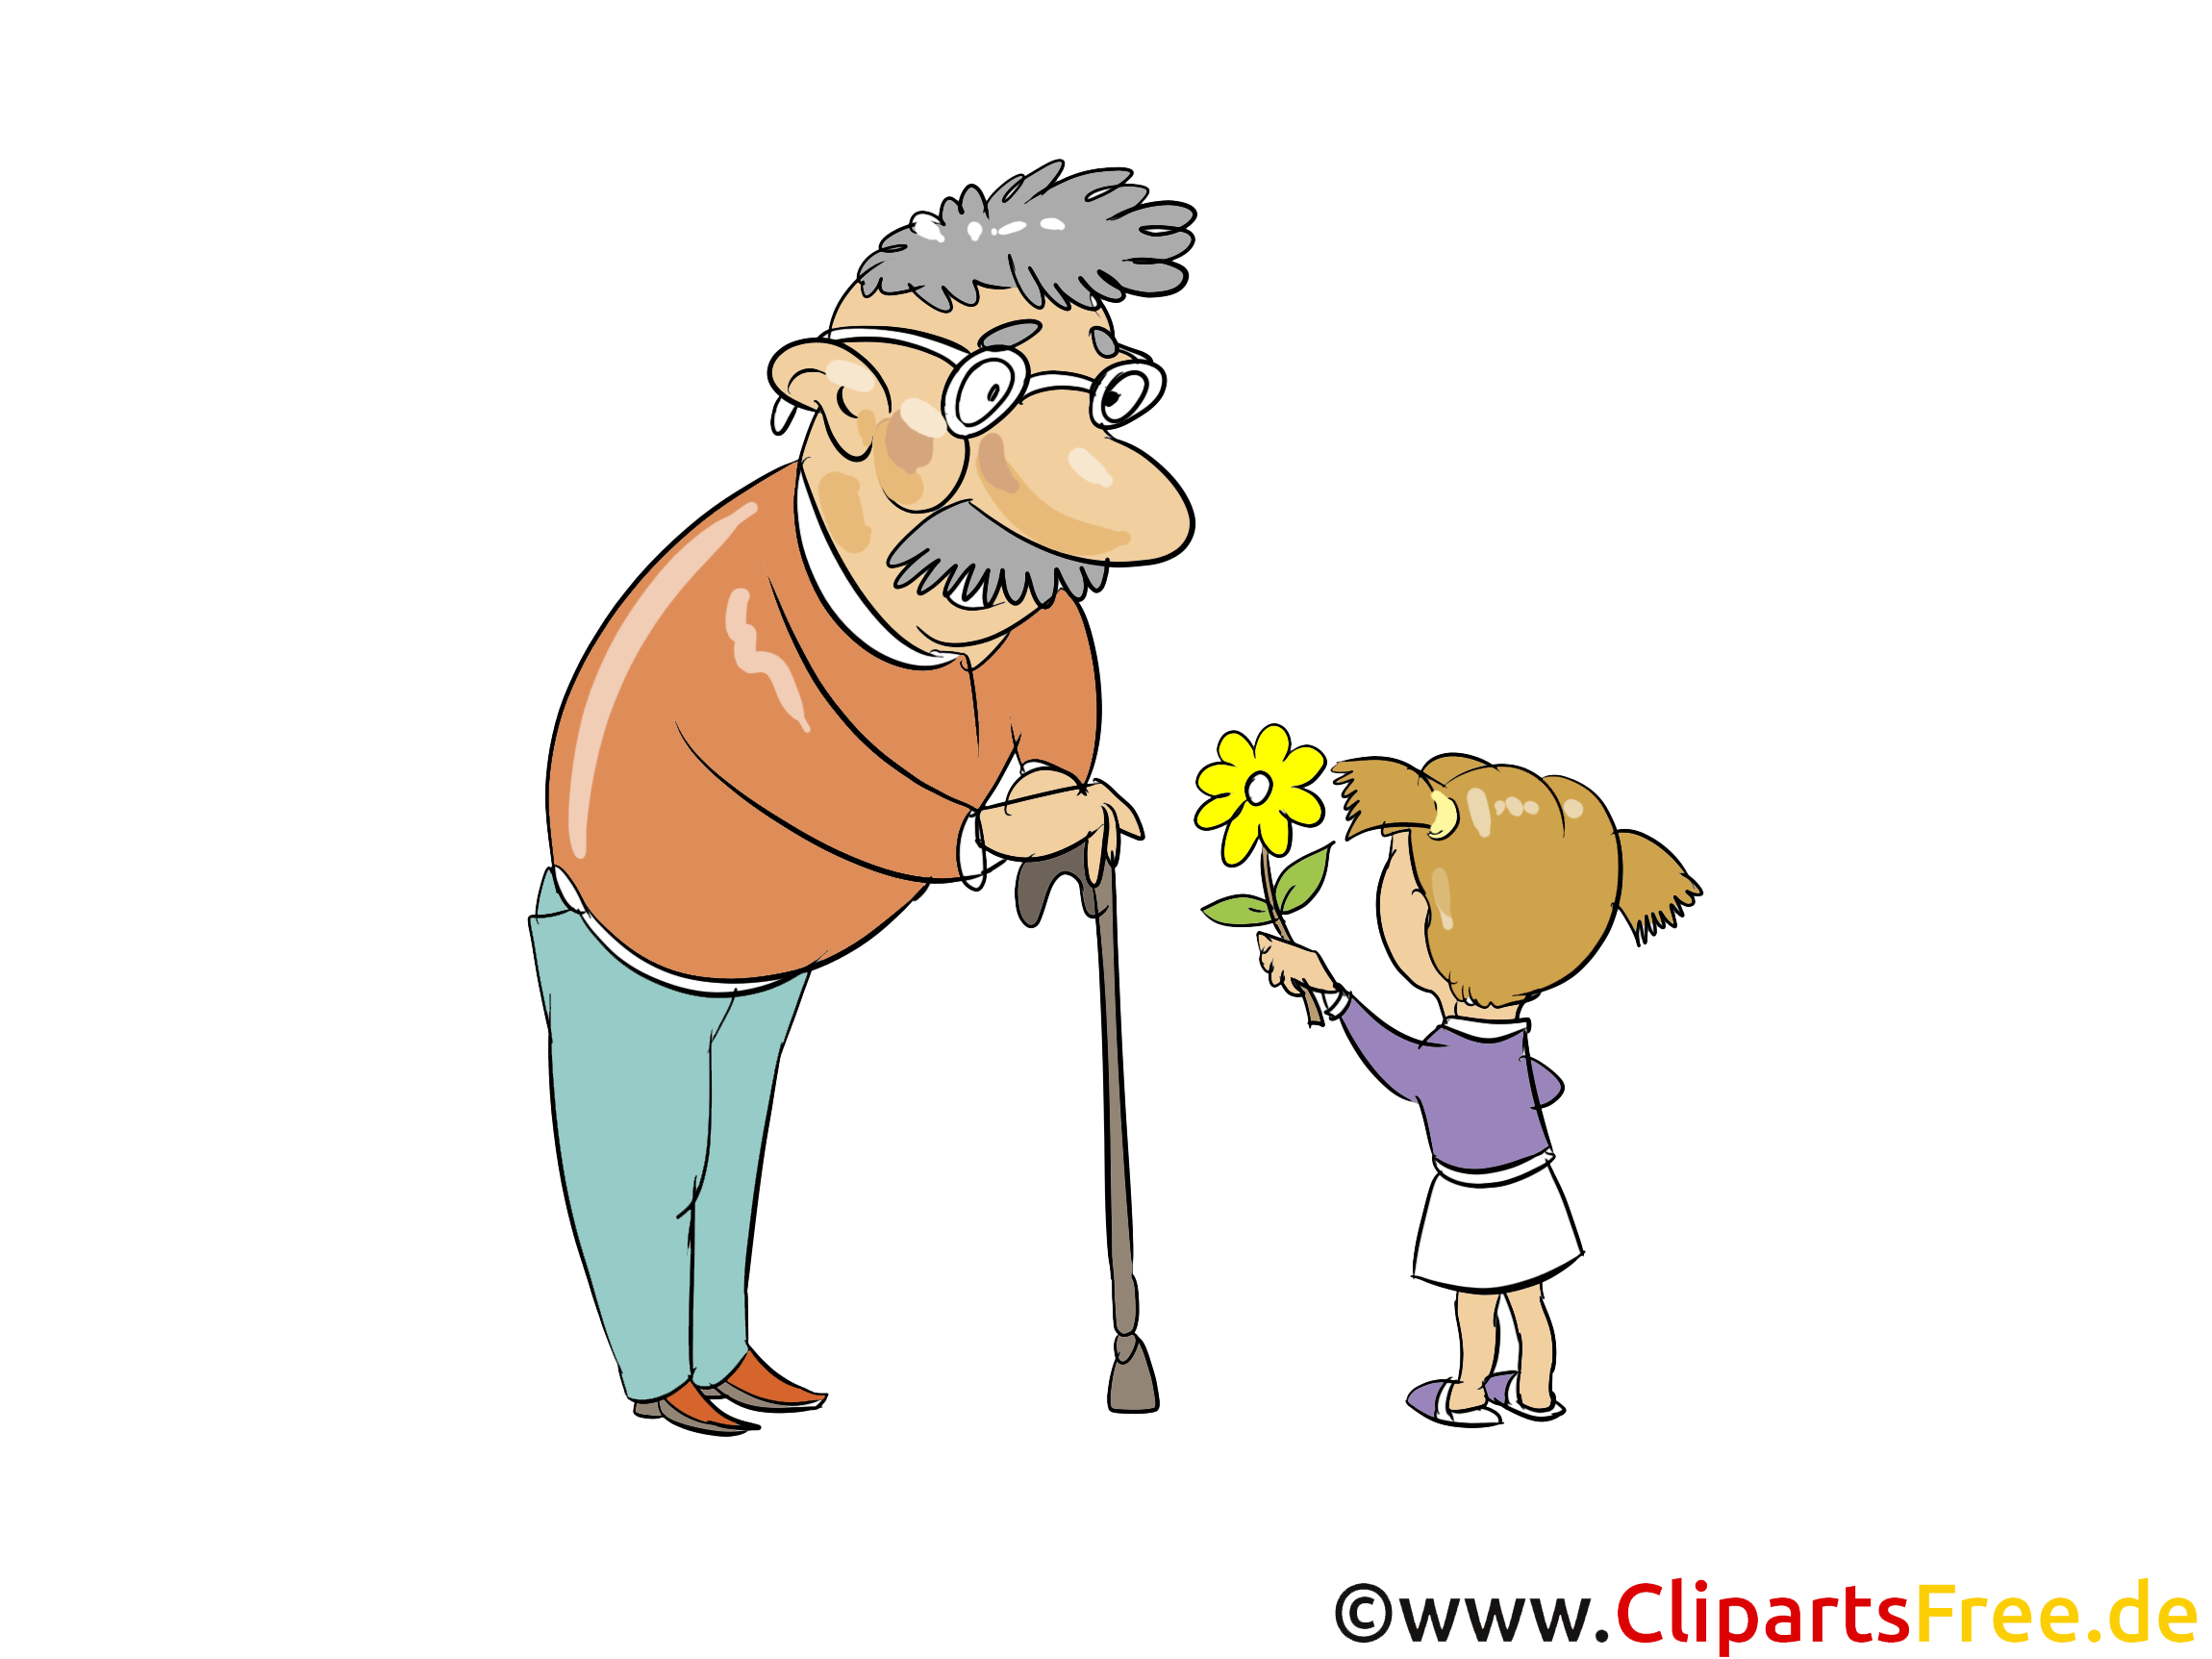 Grandchild congratulates grandpa with flowers picture, clip art, illustrati...